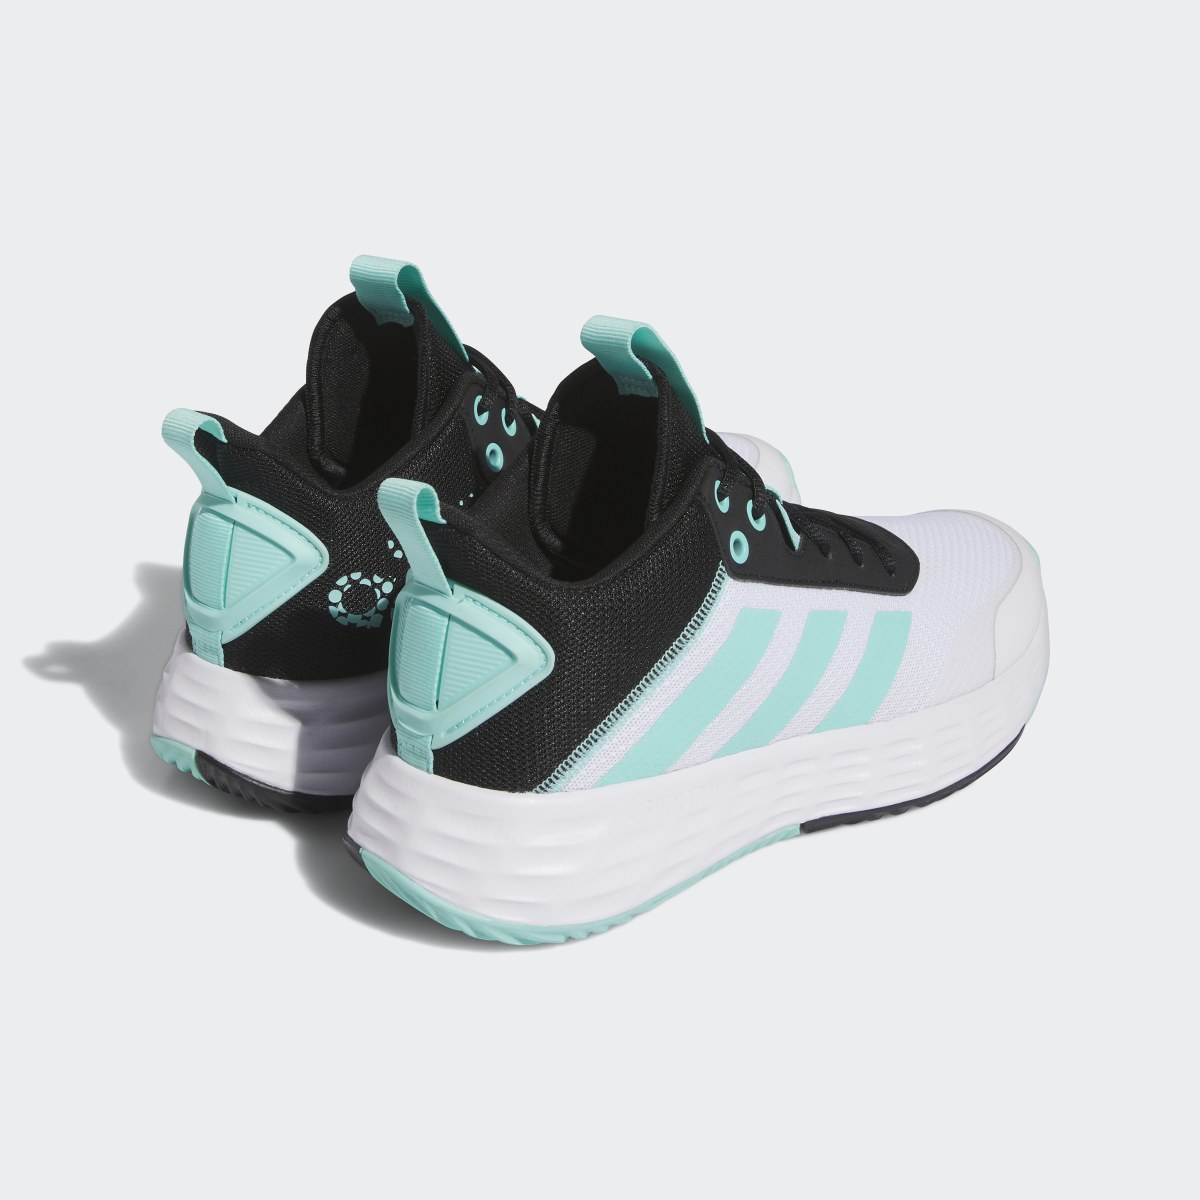 Adidas Ownthegame Ayakkabı. 6